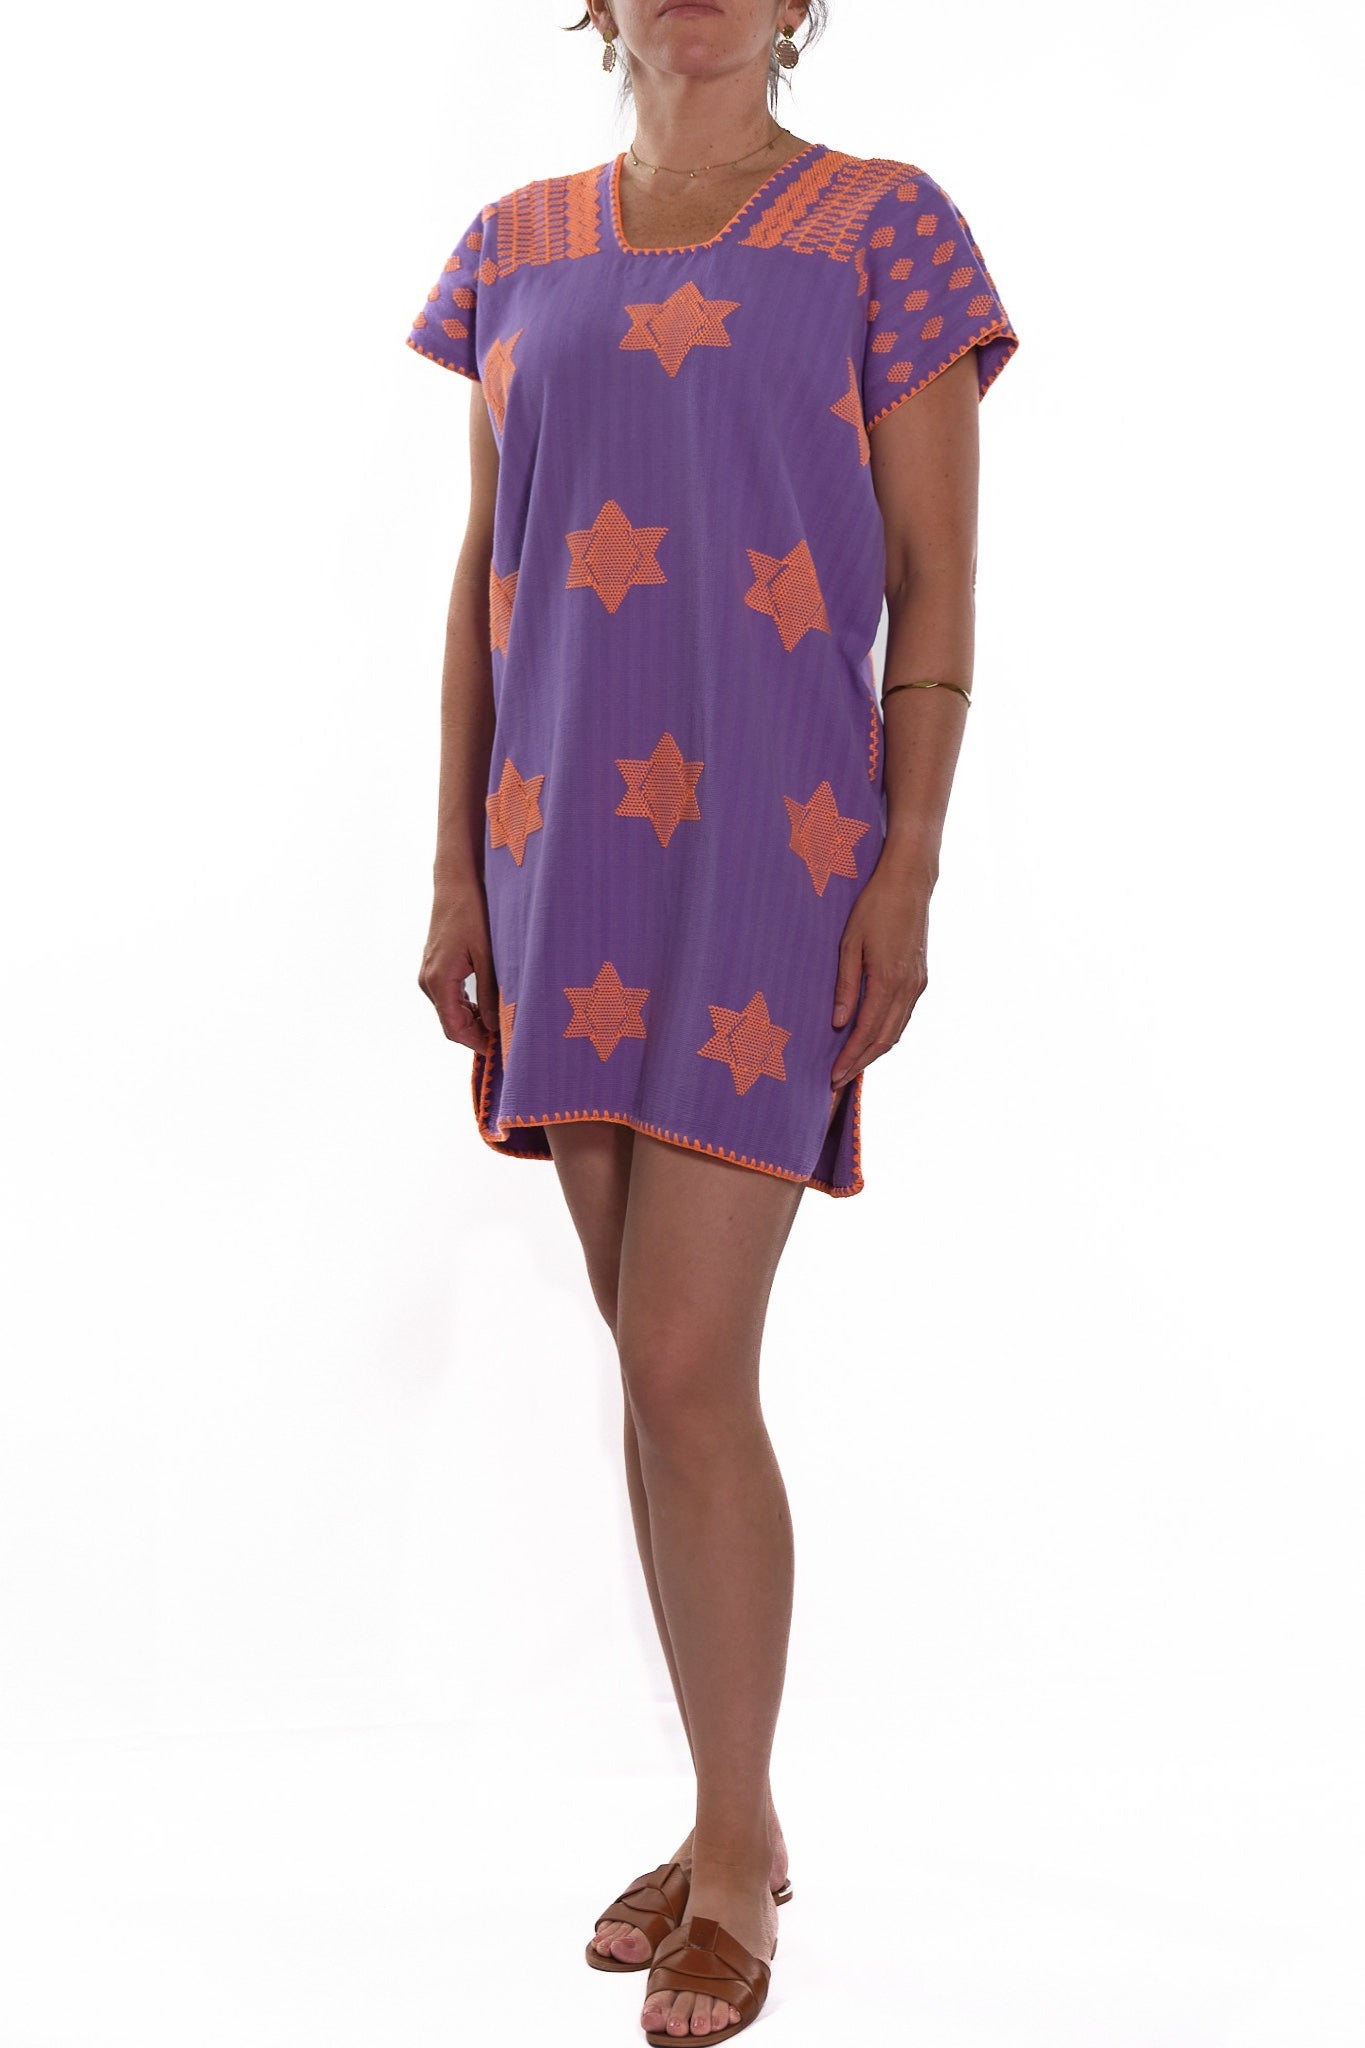 Huipil Dress San Juan purple with orange neon brocade